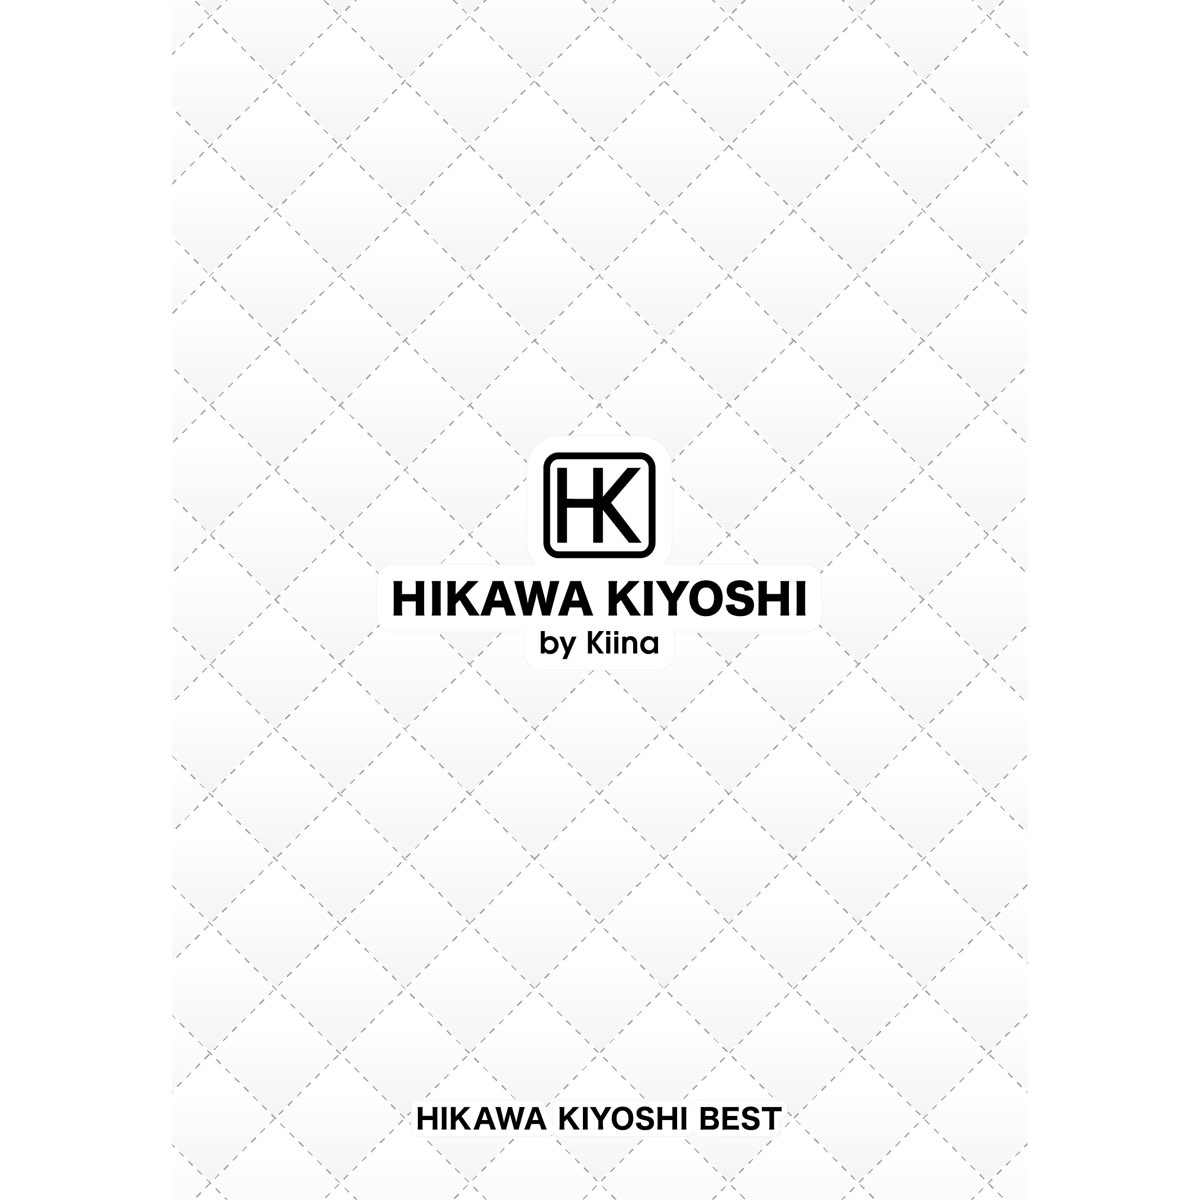 Kiyoshi Hikawa's “Limit-Break x Survivor” FULL 